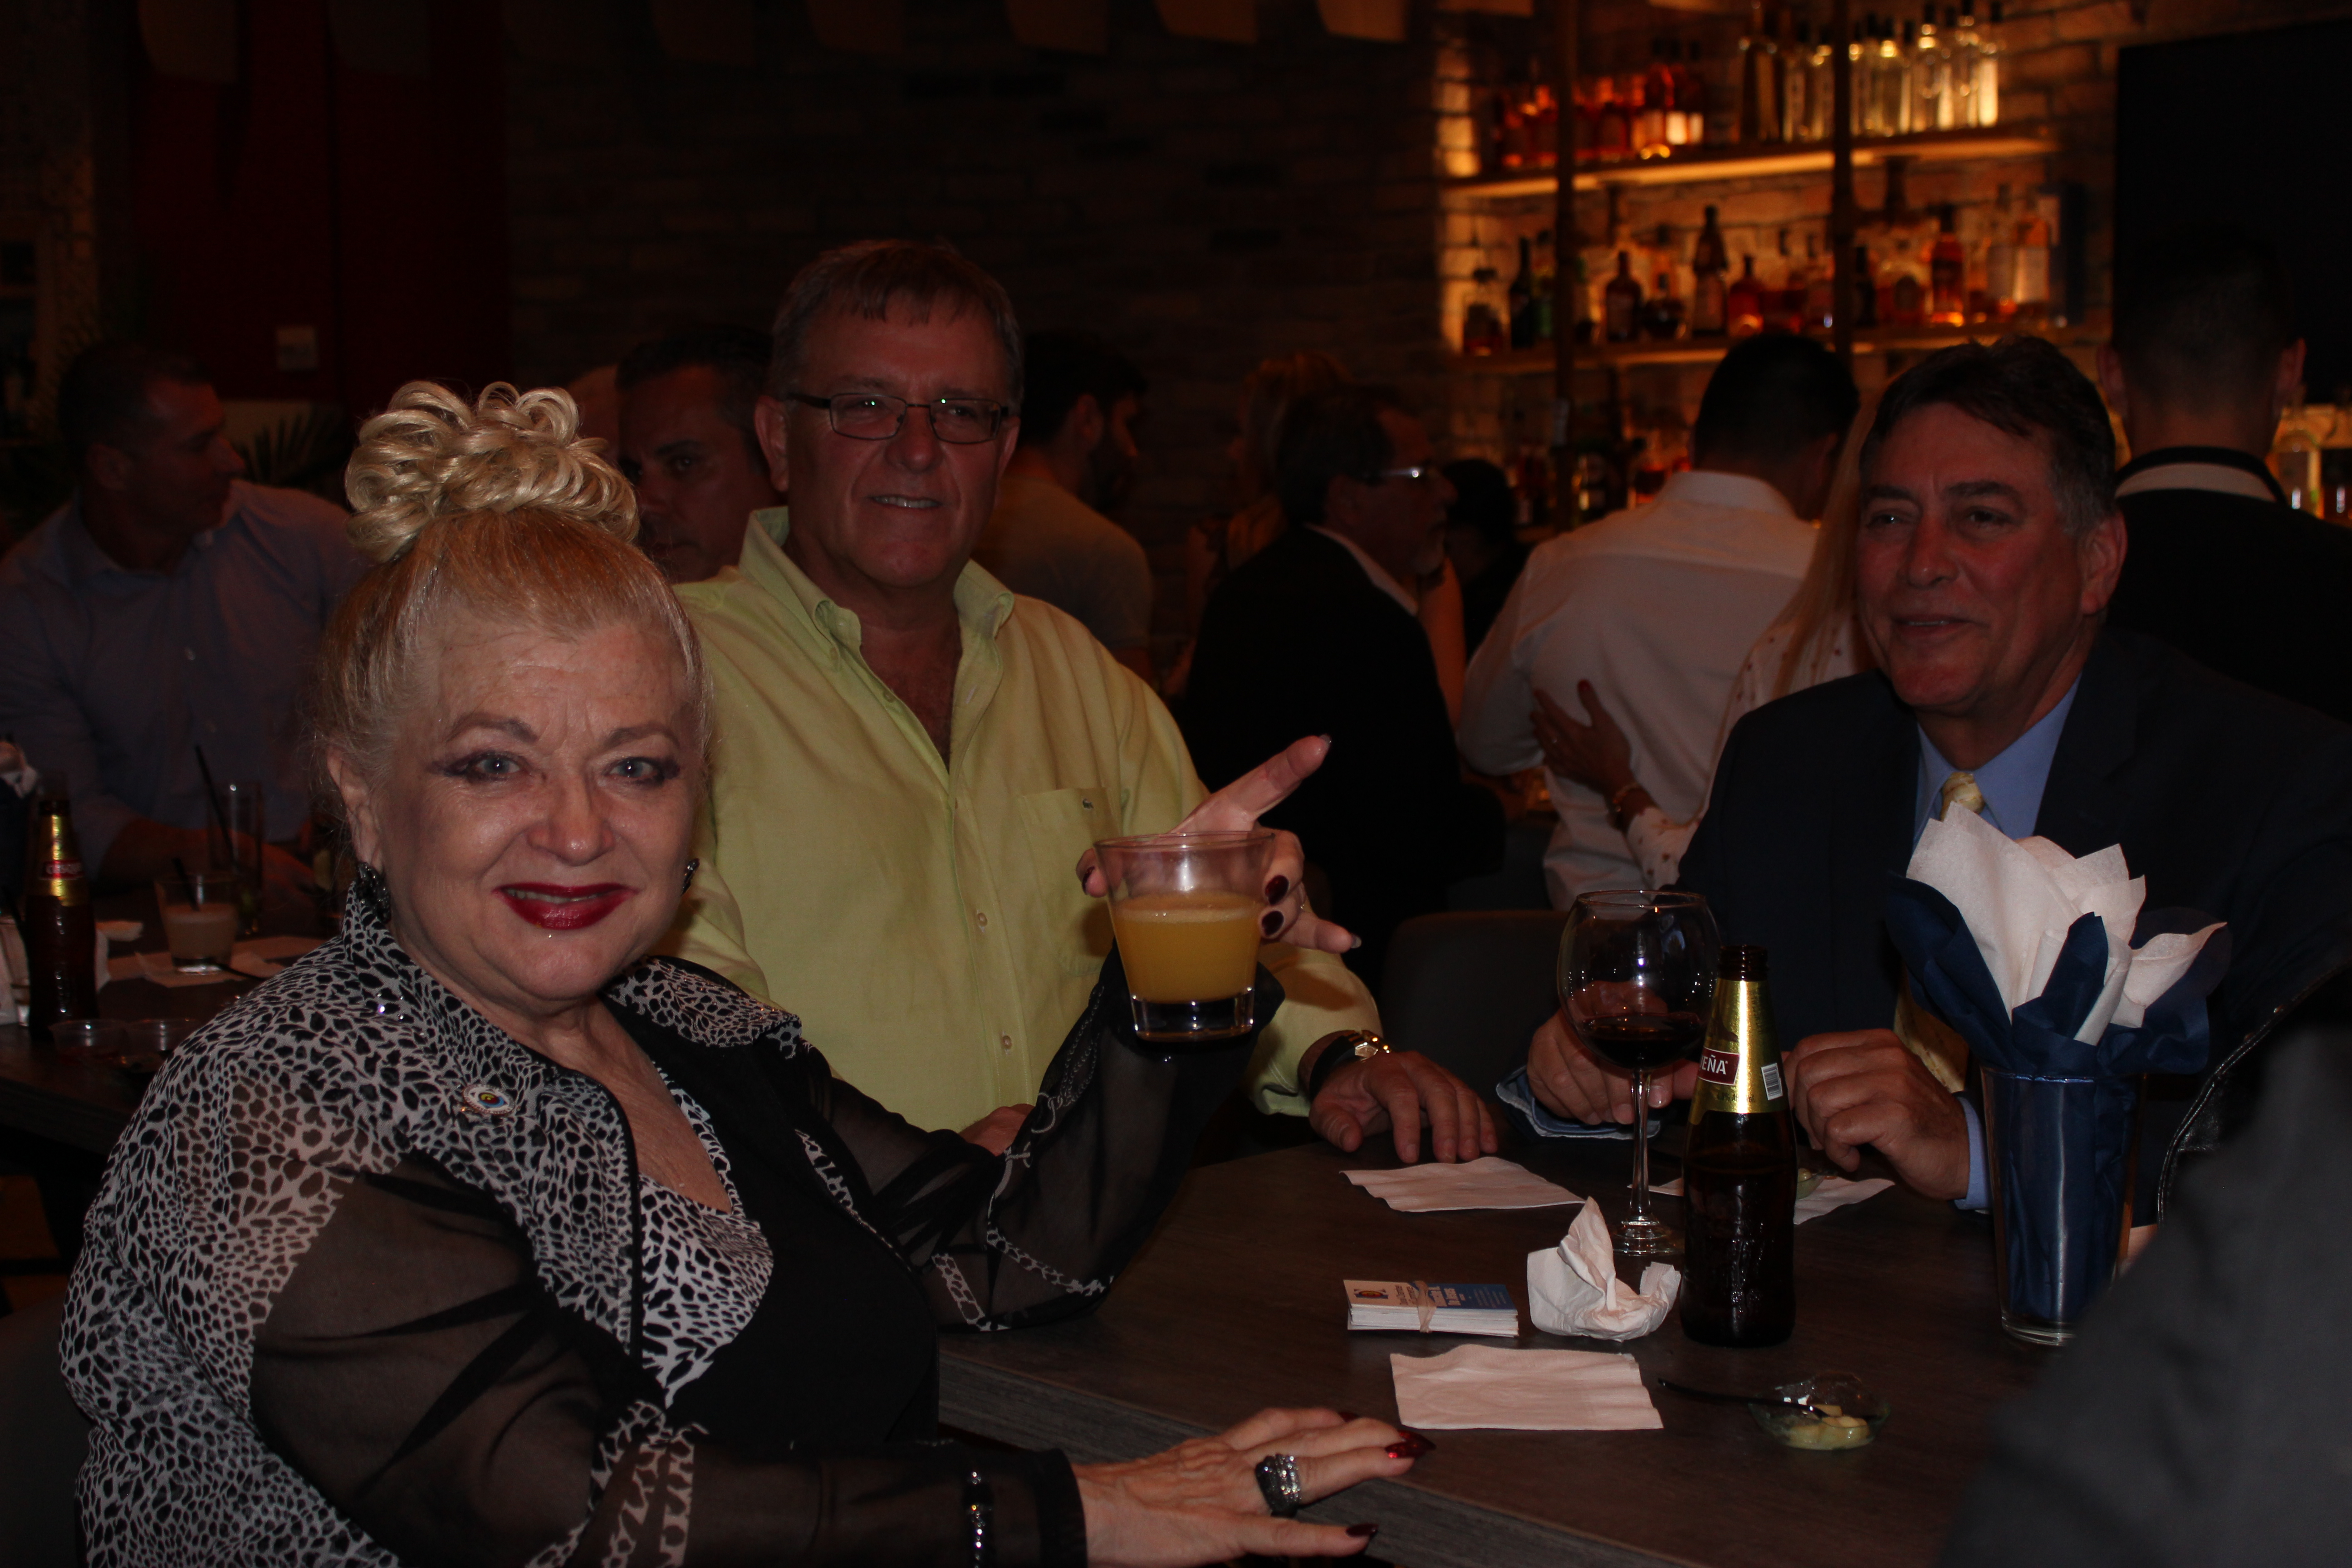 Fellow members having drinks in El Gran Inka Grand Opening.